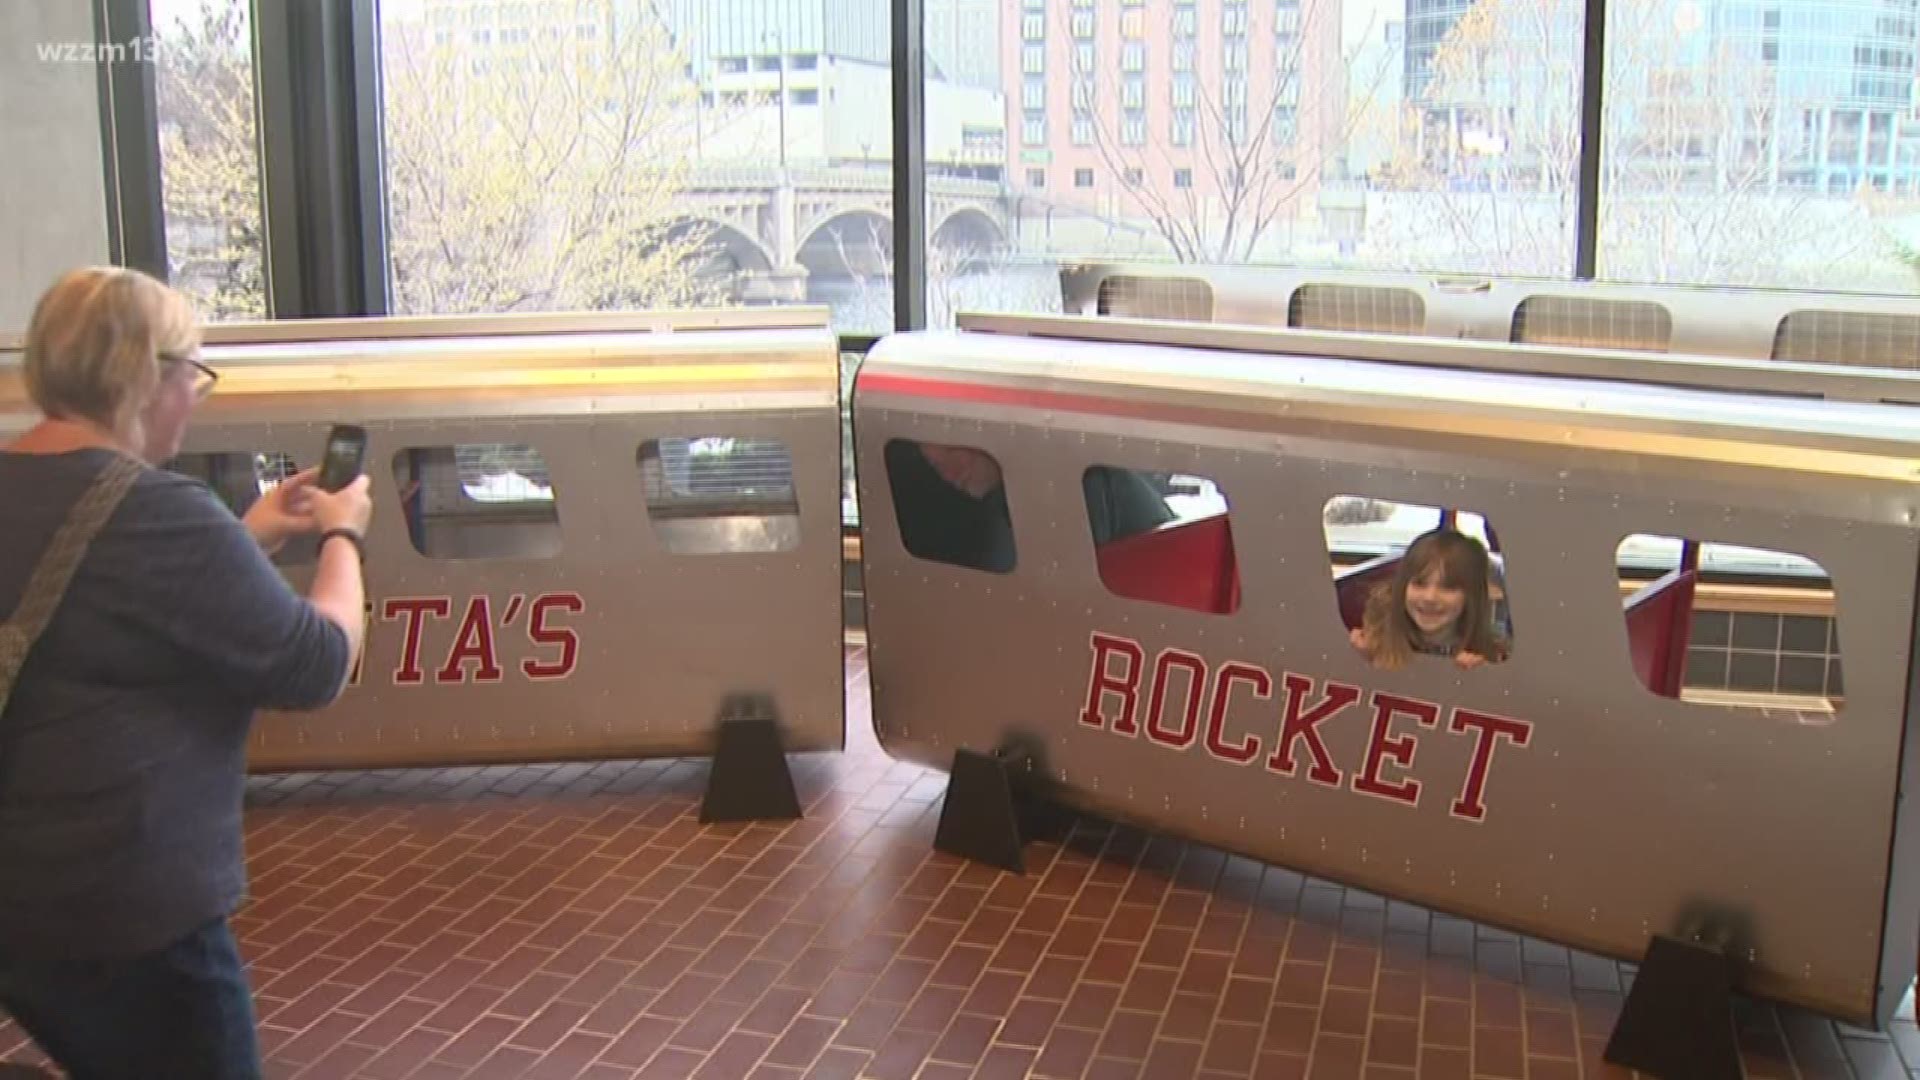 Herpolsheimer's Santa Rocket Express returns